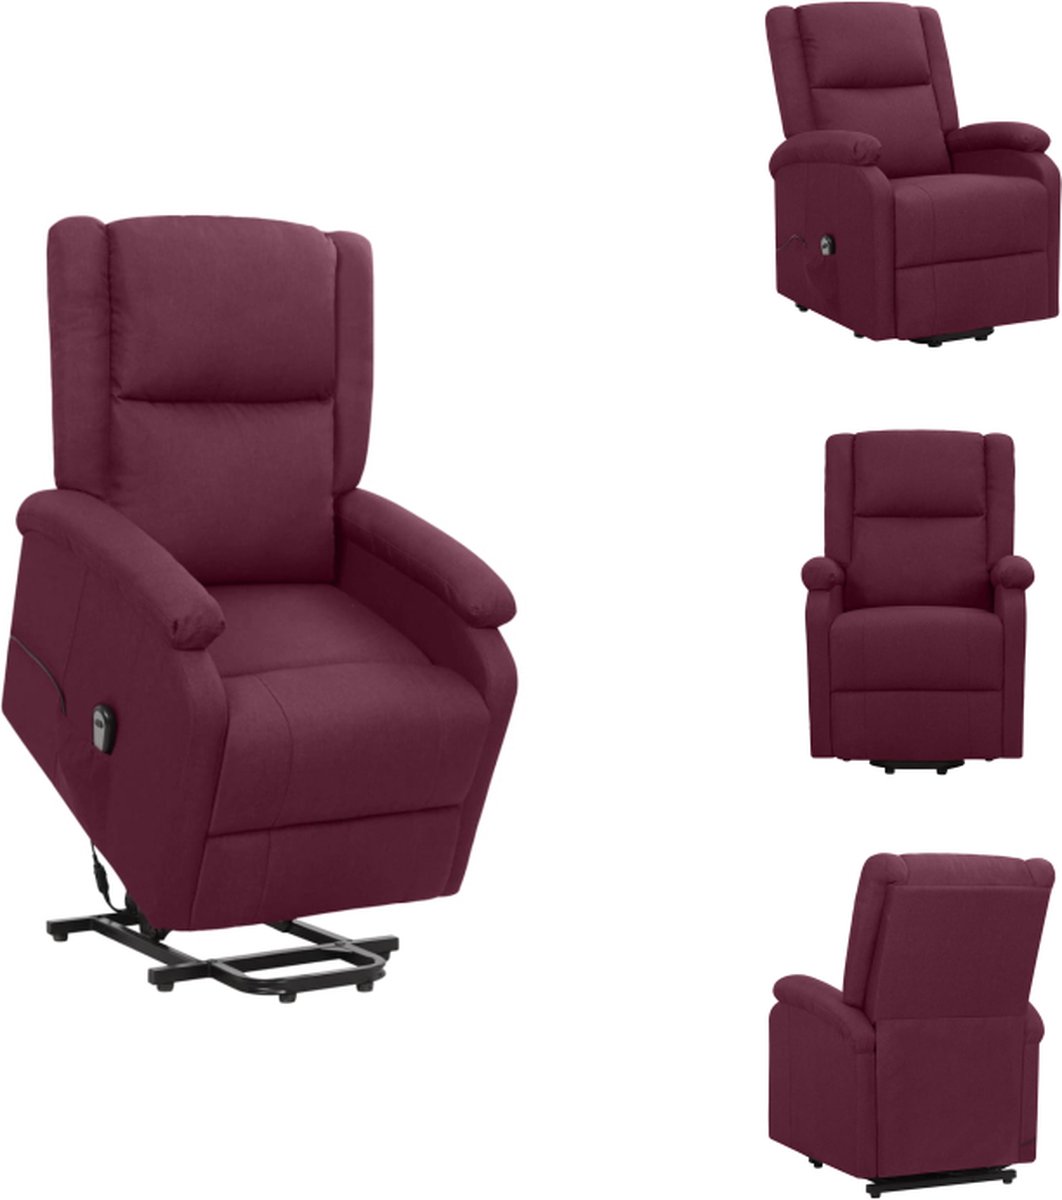 VidaXL Sta-op-stoel Relaxfauteuil Elektronisch verstelbaar Paars 70 x 89 x 103.5 cm 100% polyester en metaal Fauteuil